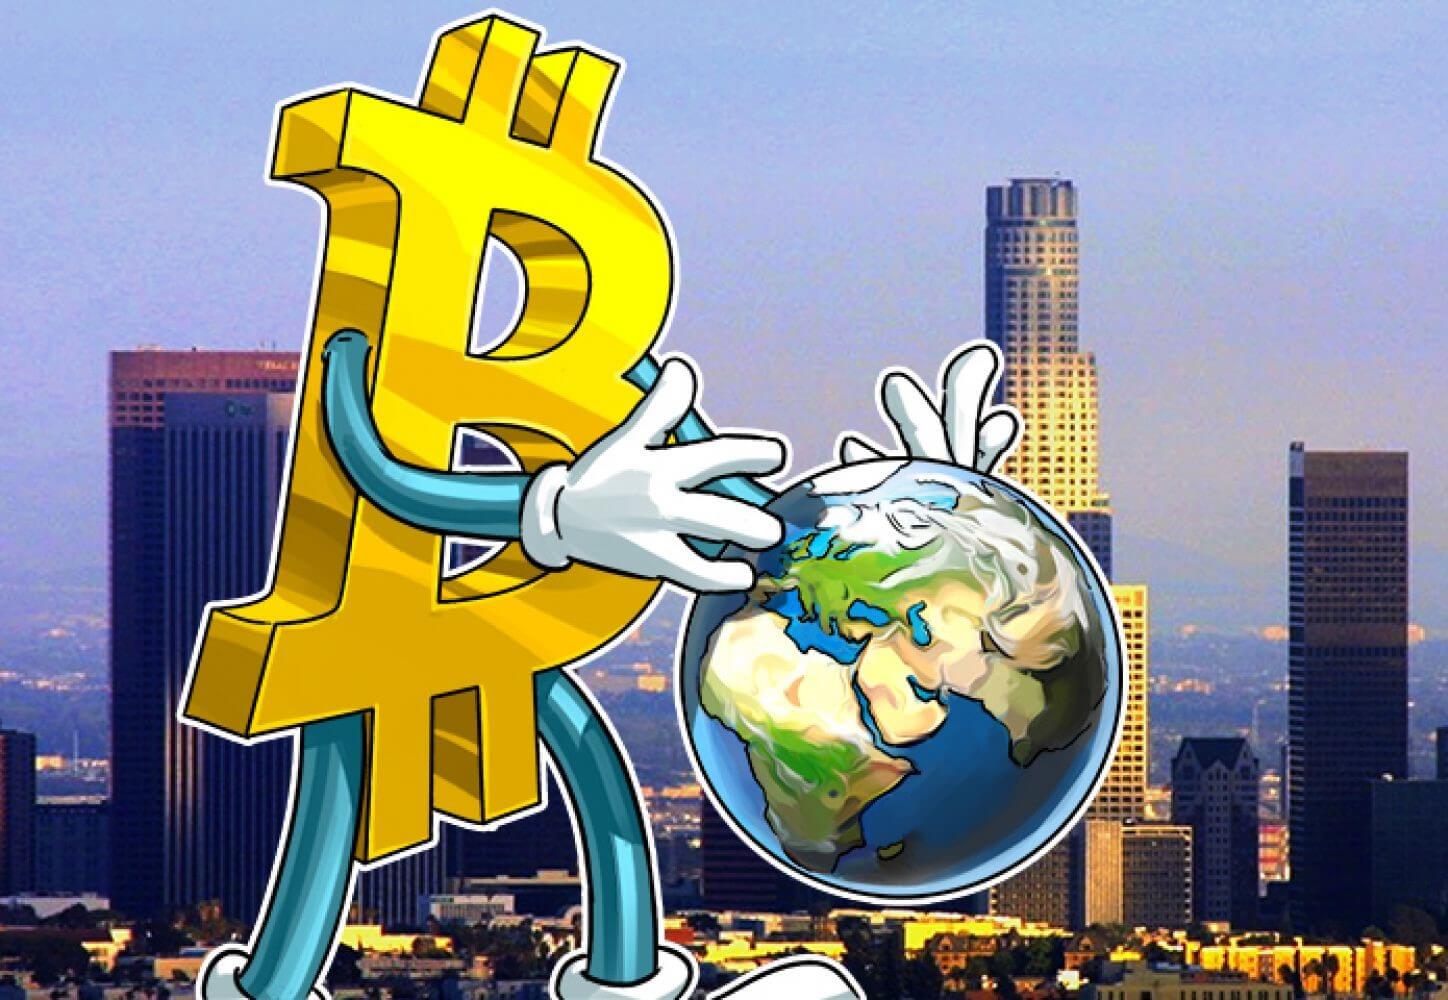 Nakúpte bitcoiny v rôznych krajinách